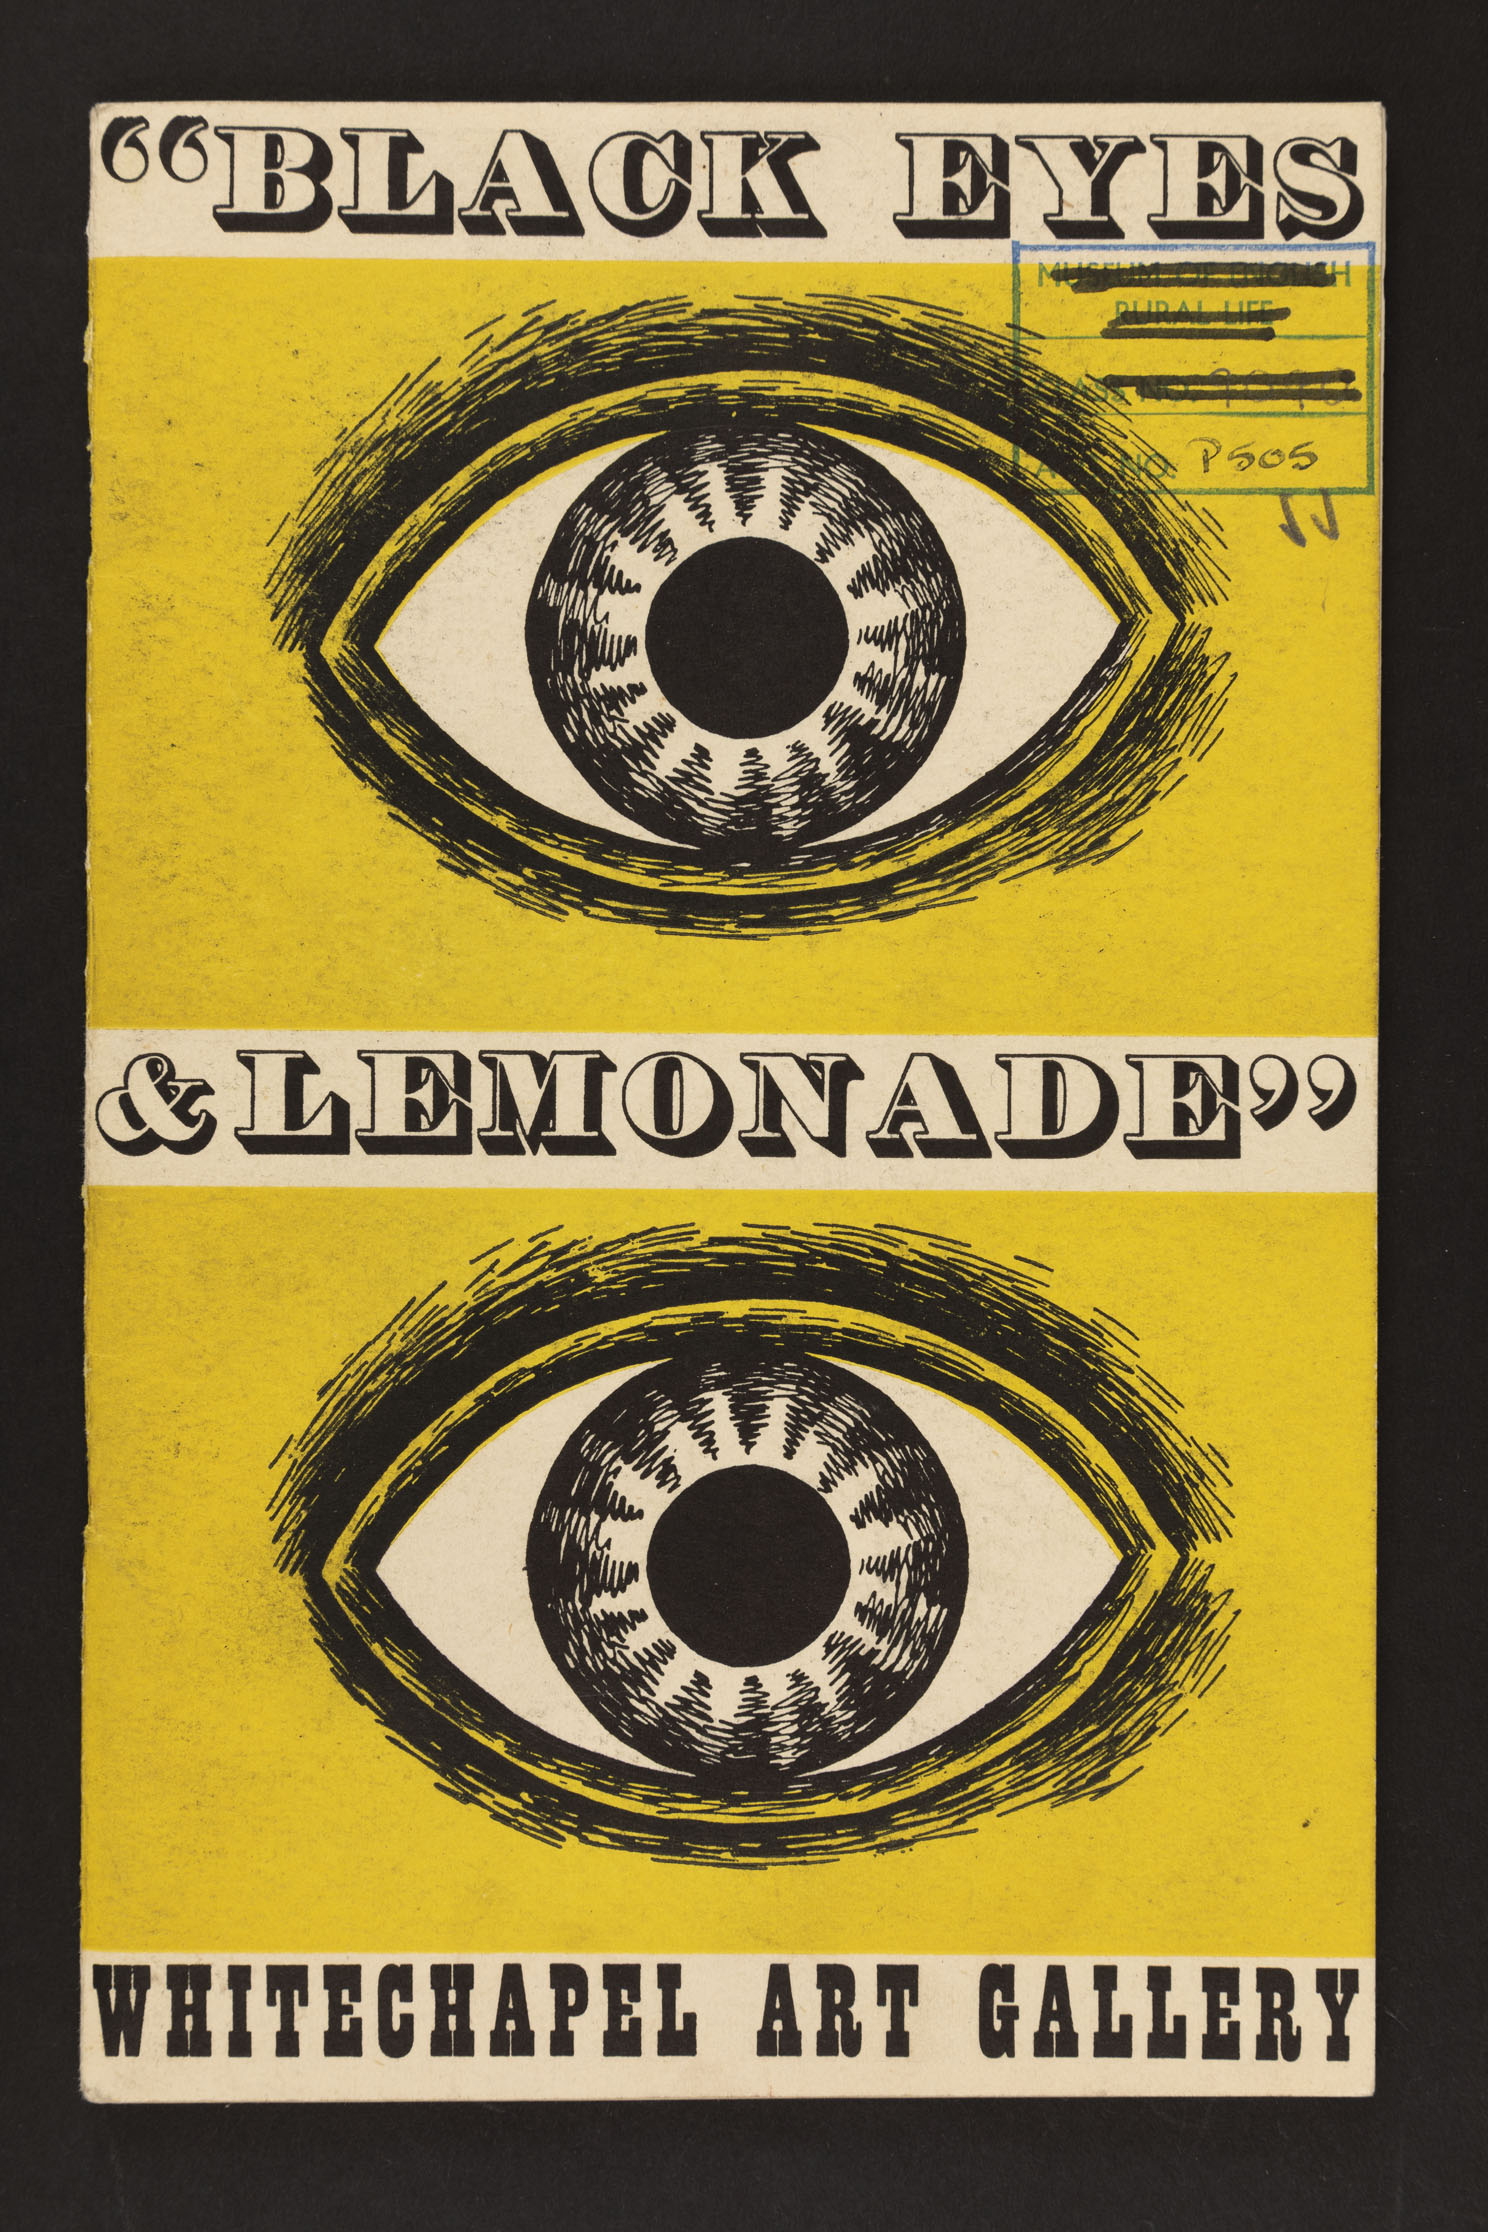 32. Black Eyes and Lemonade